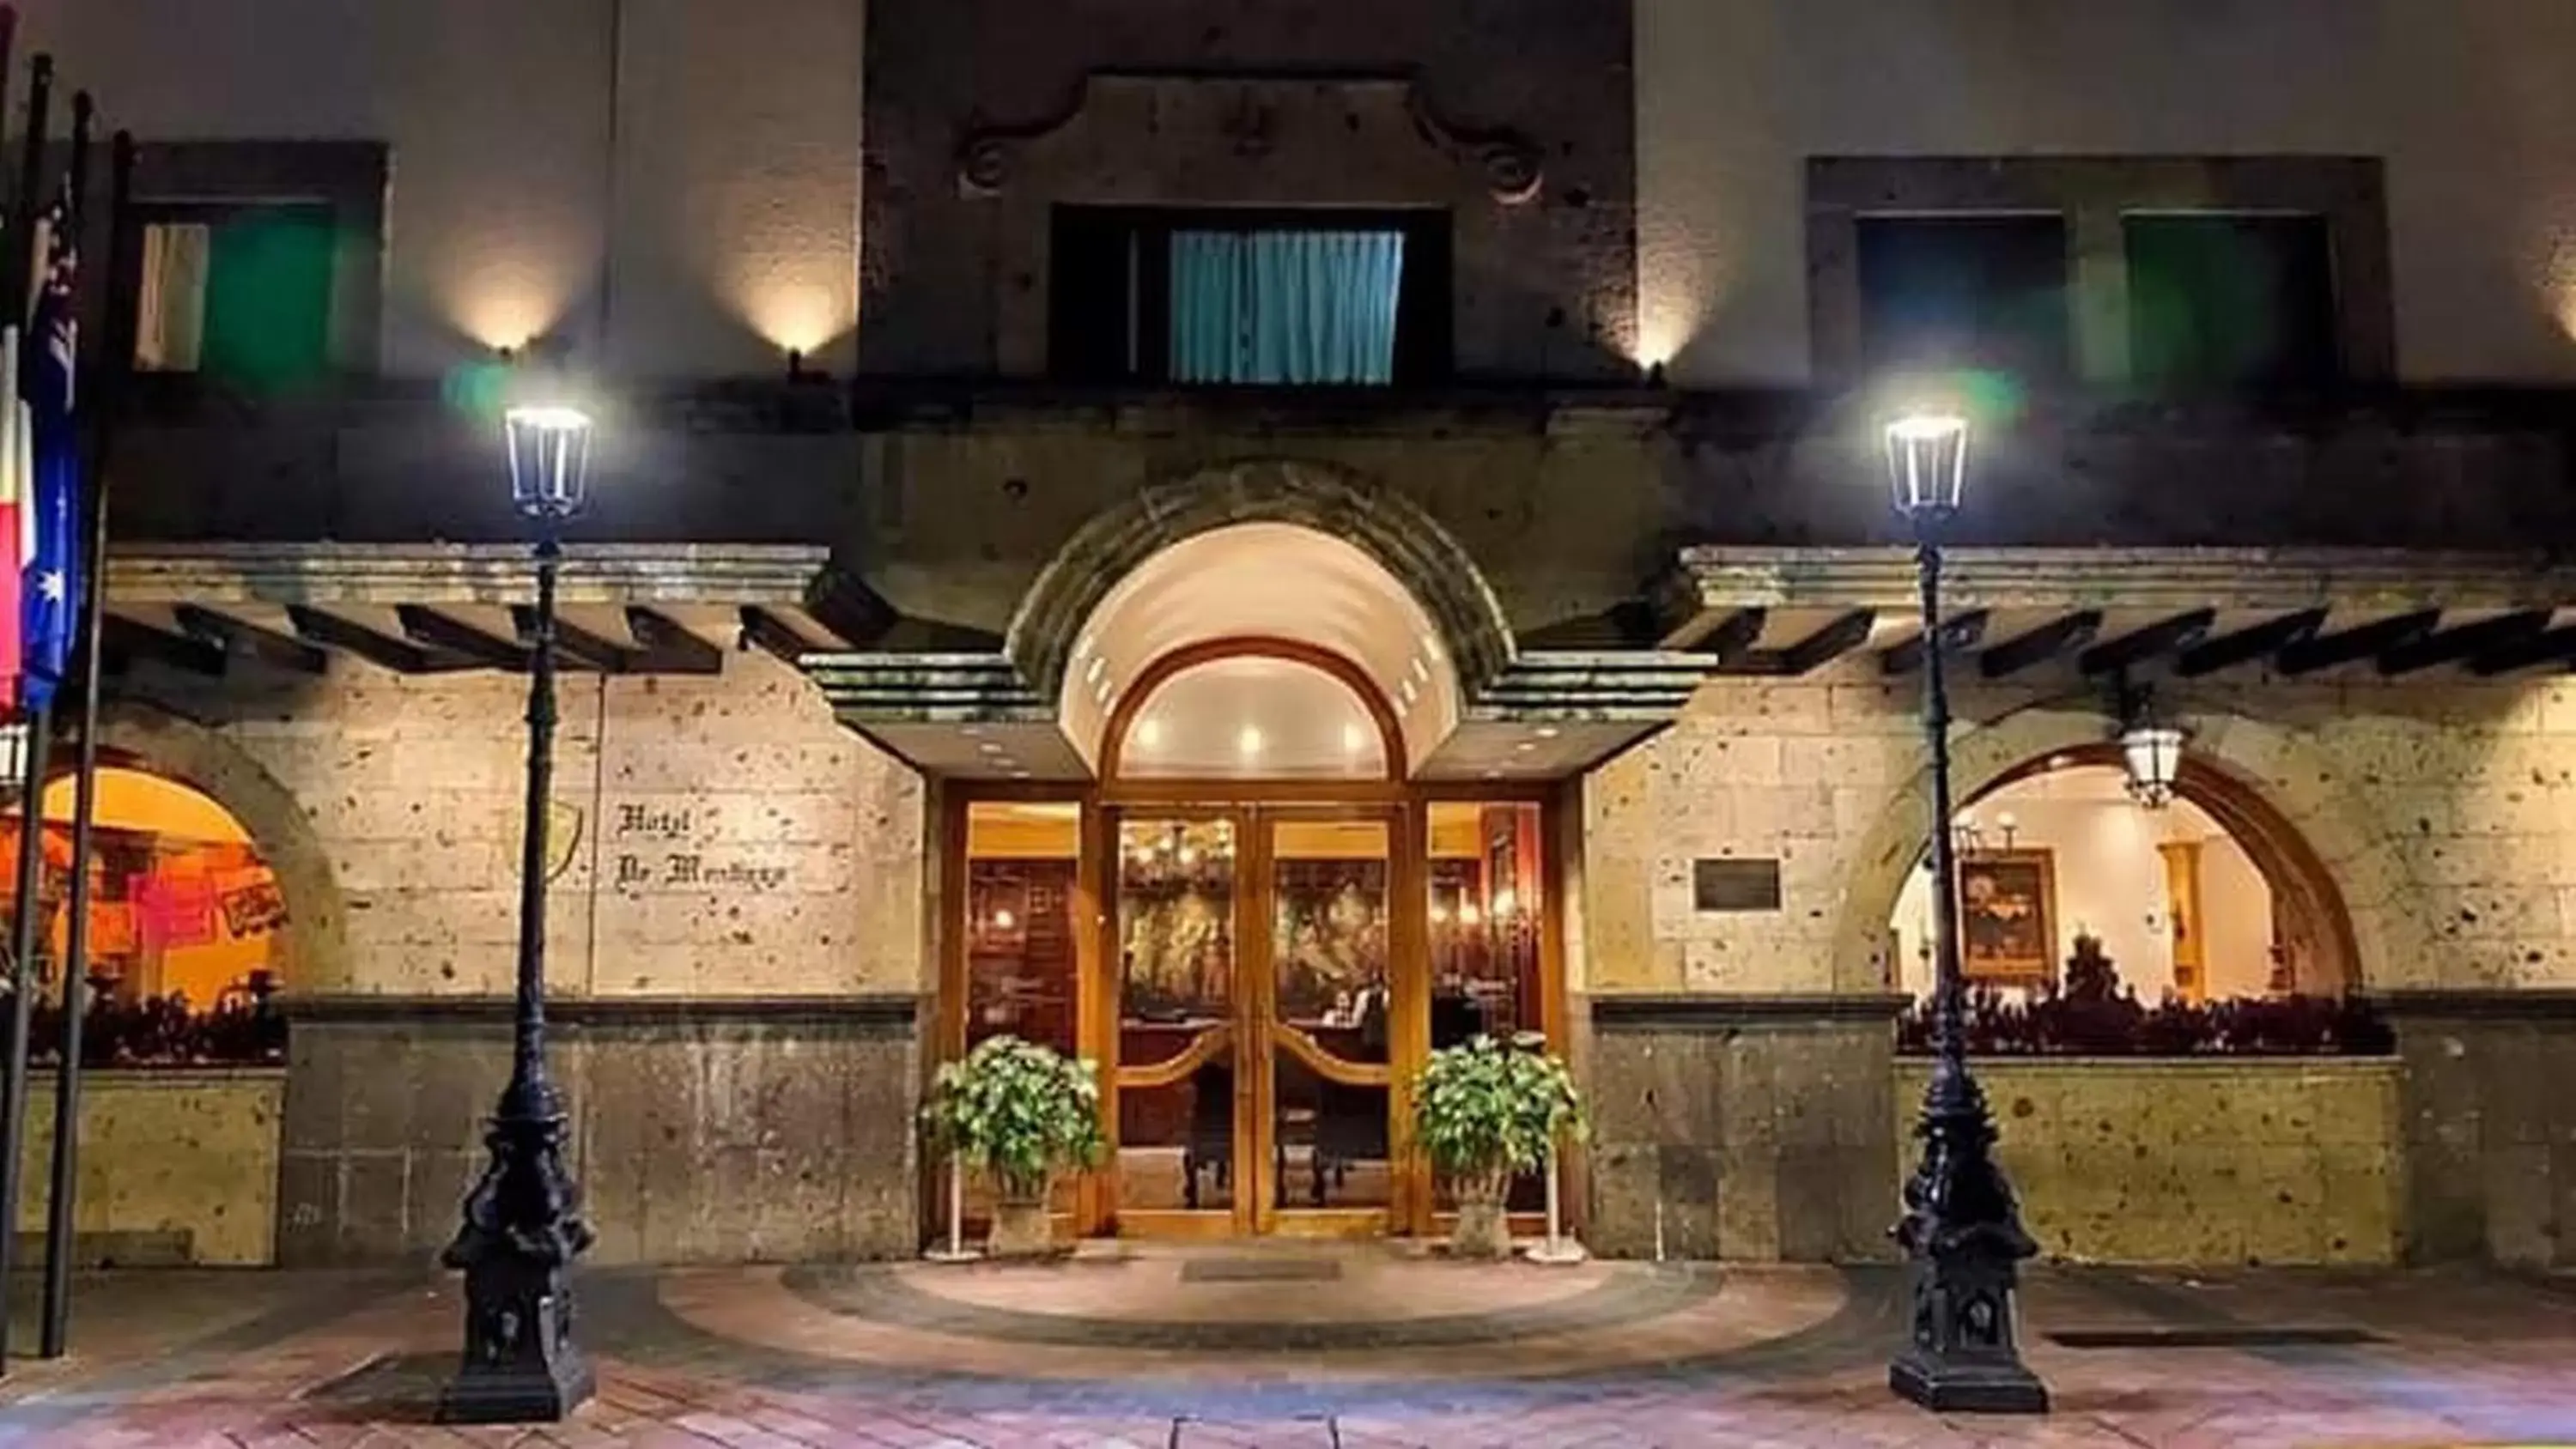 Facade/entrance in Hotel de Mendoza